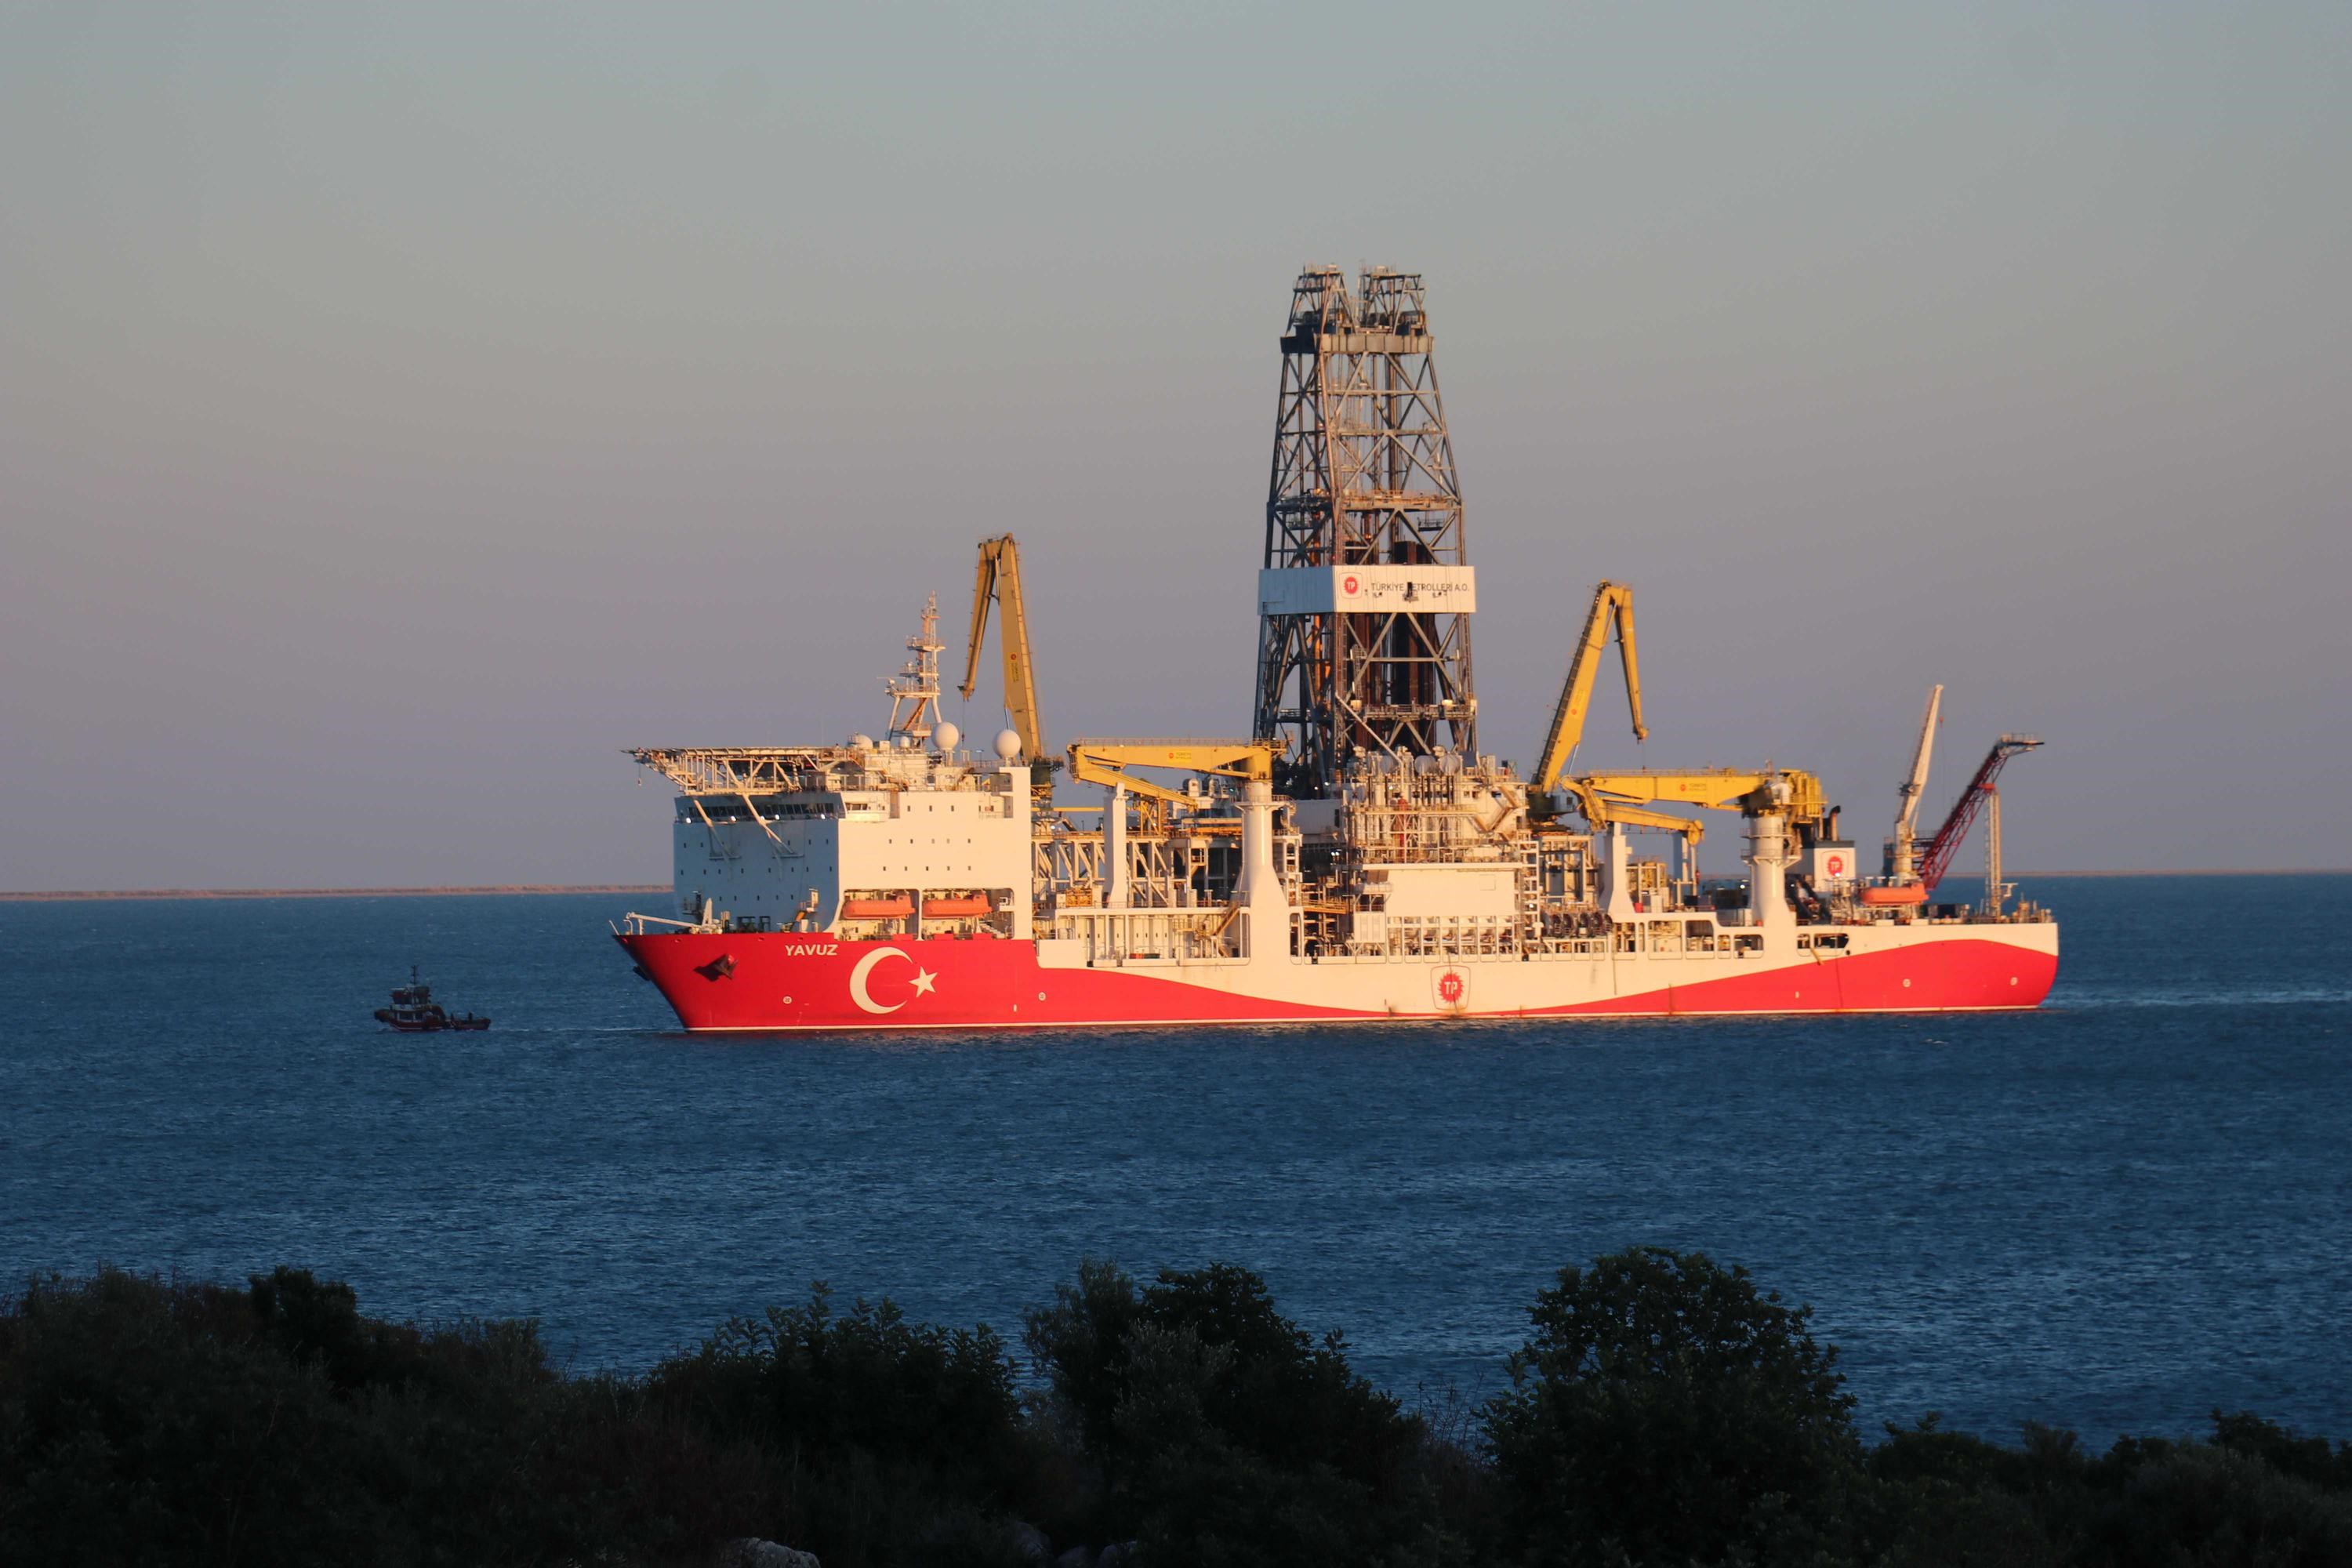 Yavuz sondaj gemisi Karadeniz'de göreve başlıyor